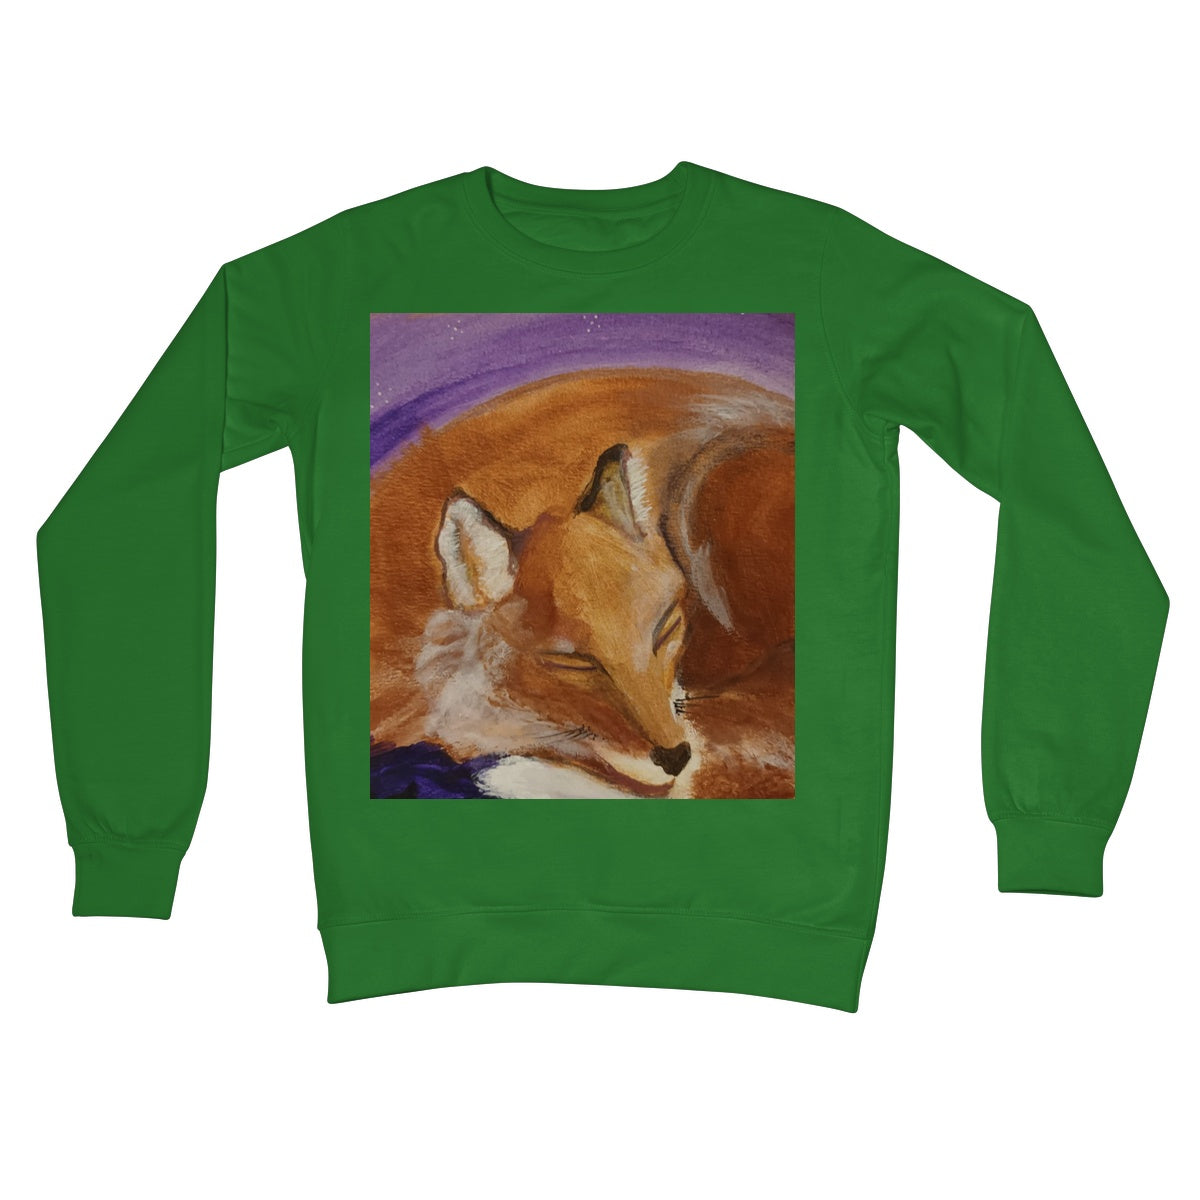 Sleepy Fox Crew Neck Sweatshirt